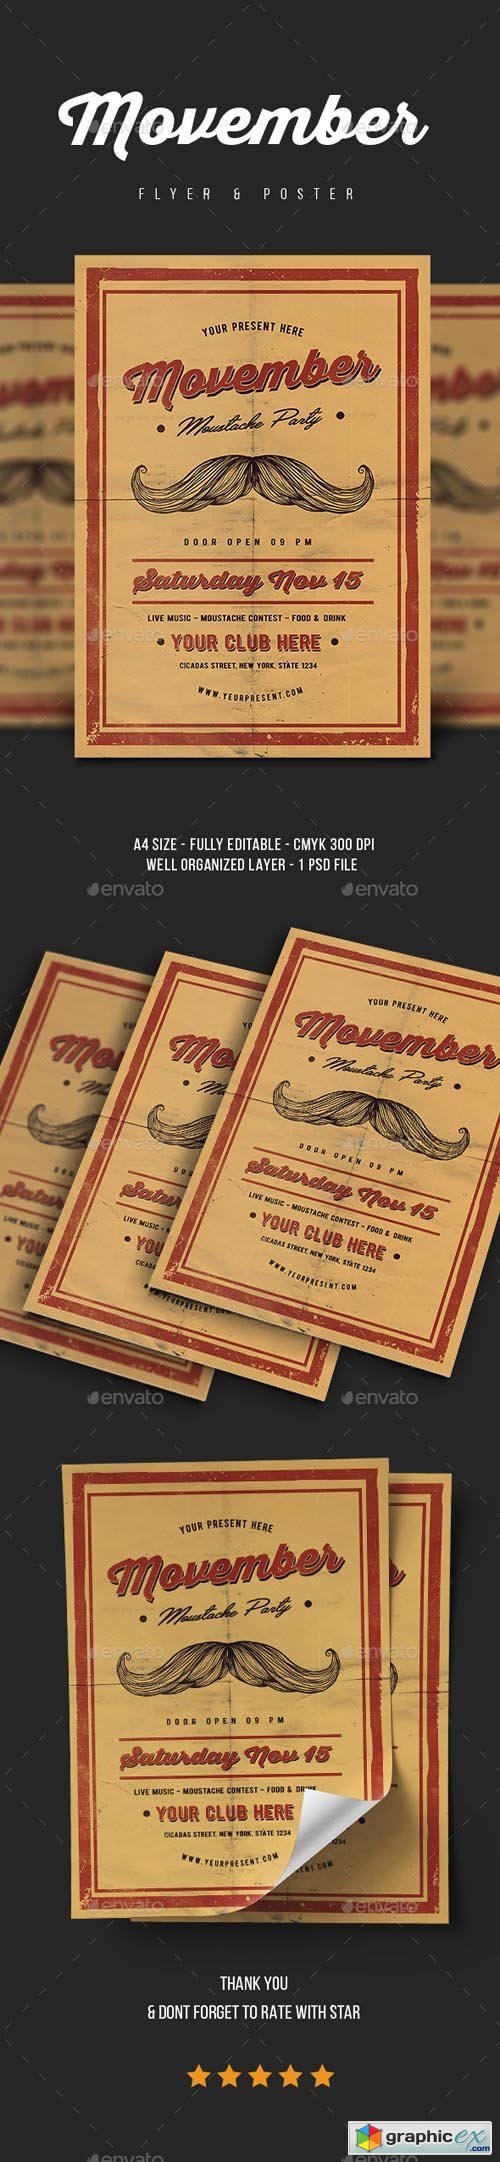 Movember Flyer Vol.2